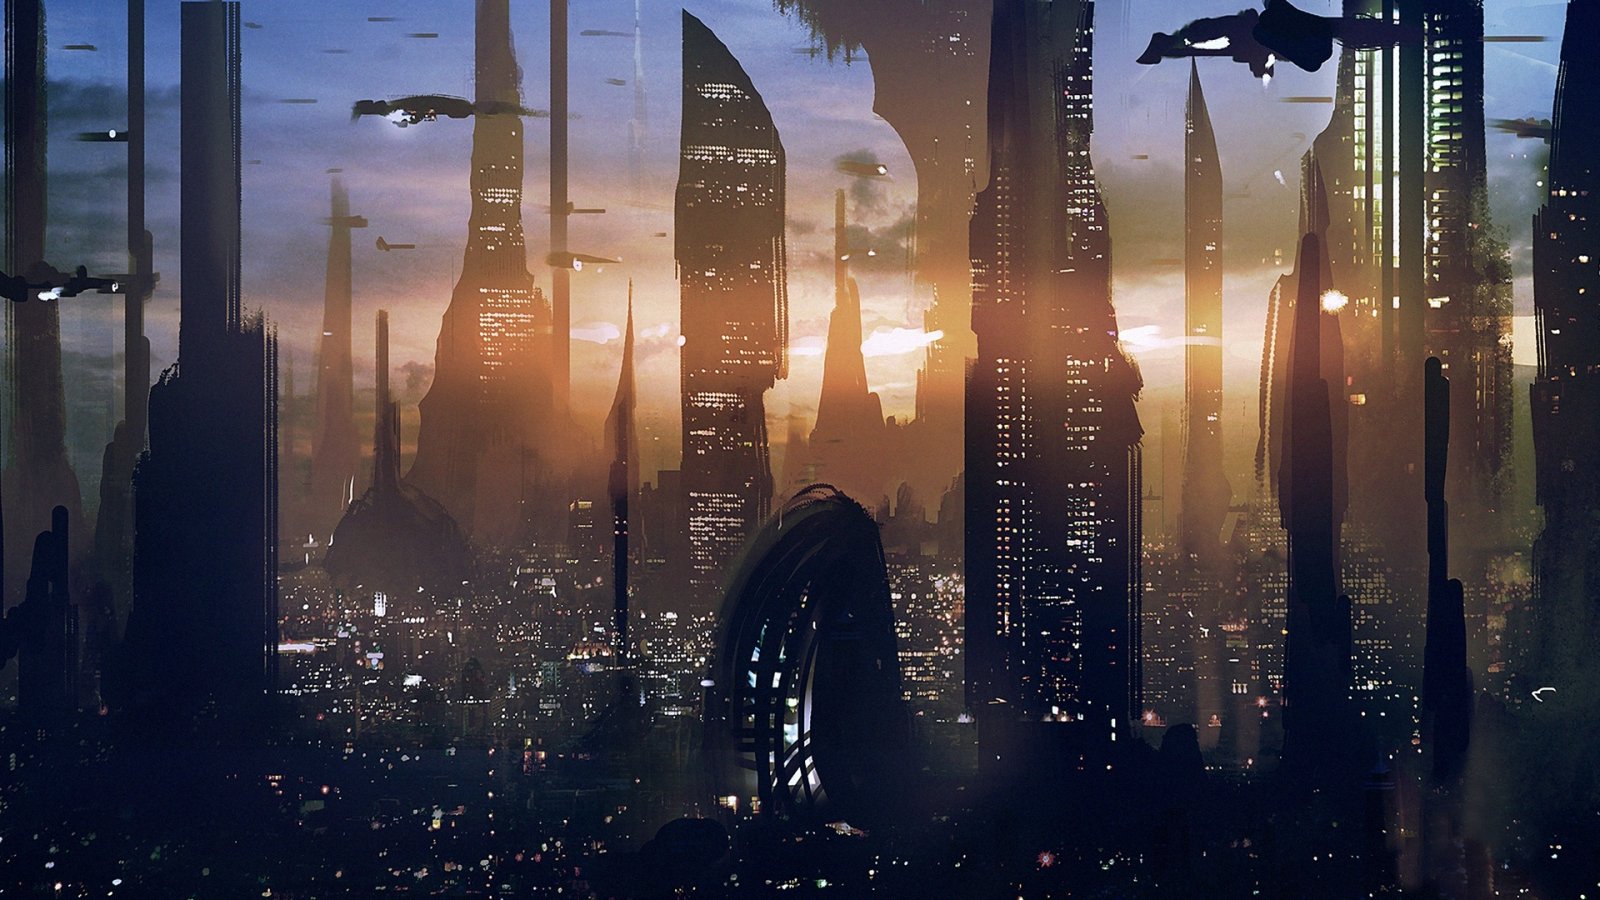 Star-Wars-skyscraper-future-city_1920x1080.jpg